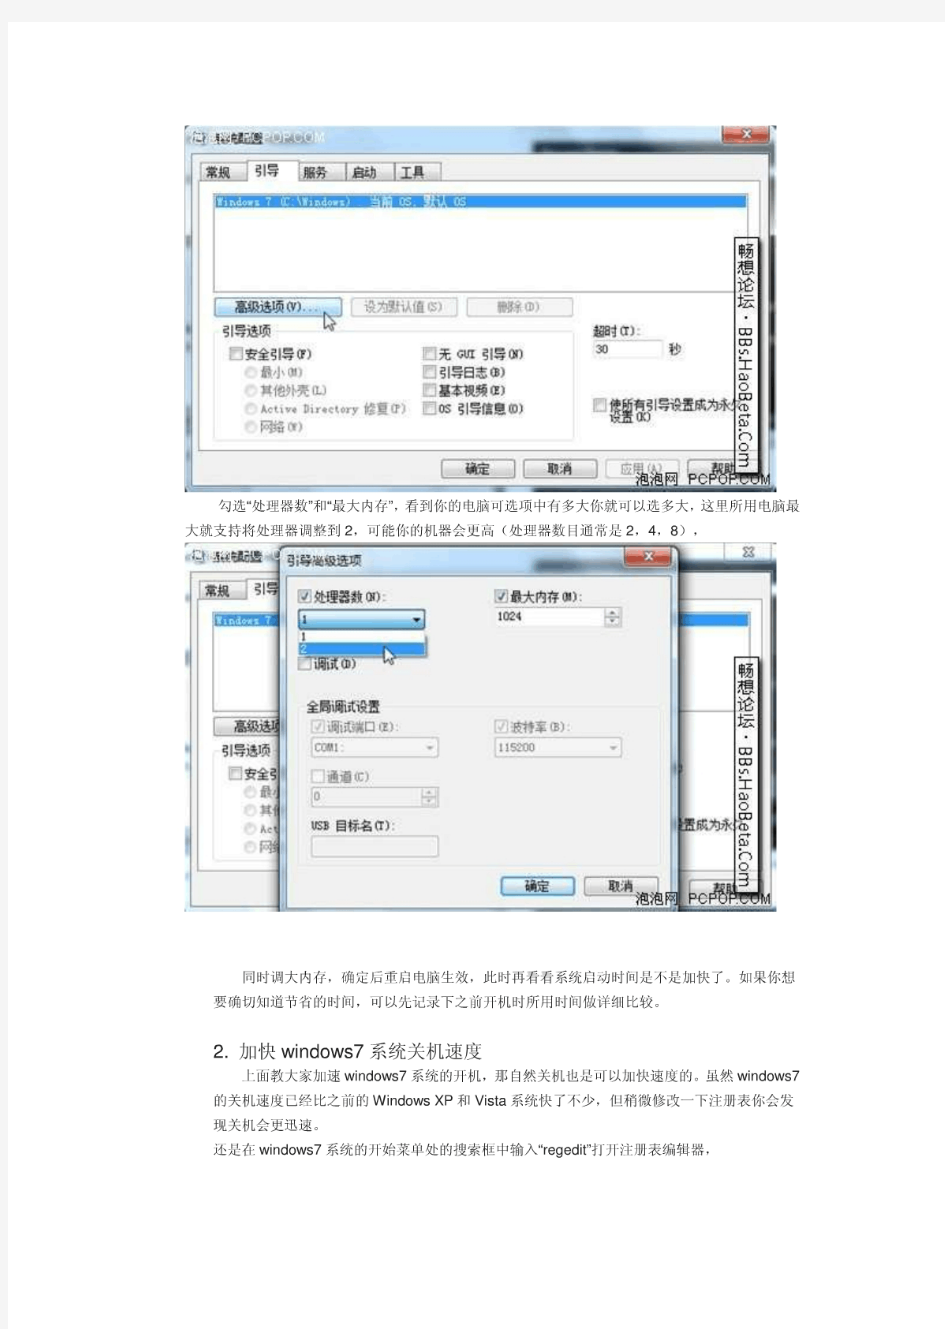 windows7操作系统详细使用教程